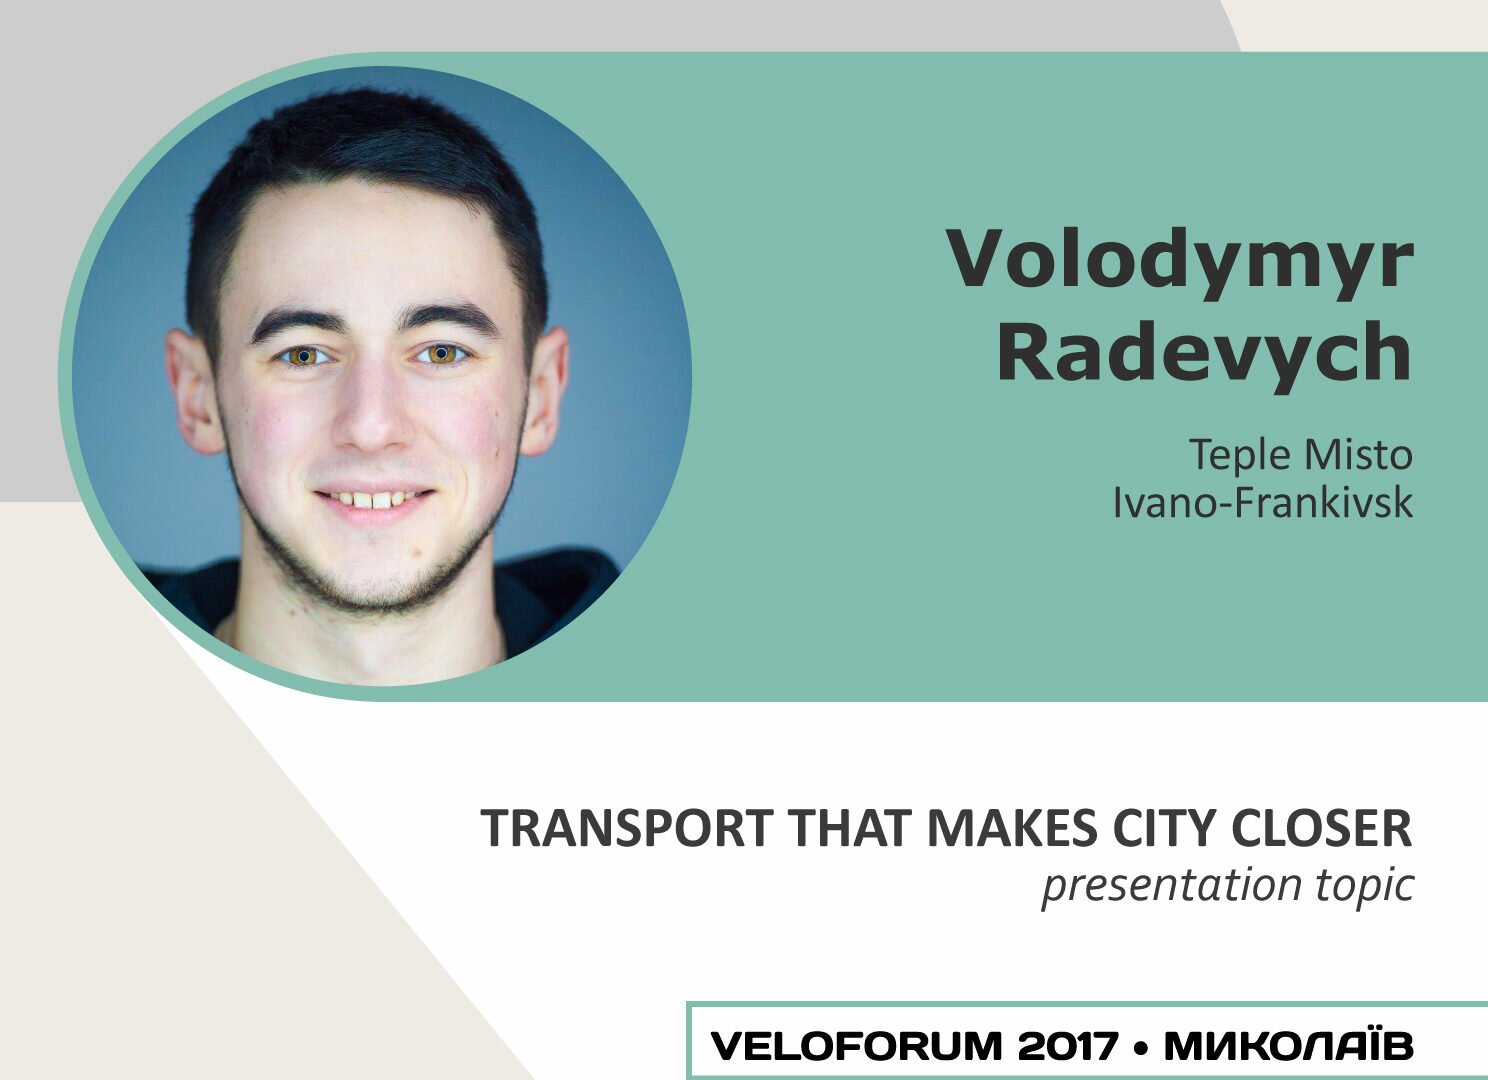 VELOFORUM 2017 SPEAKERS. Volodymyr Radevych